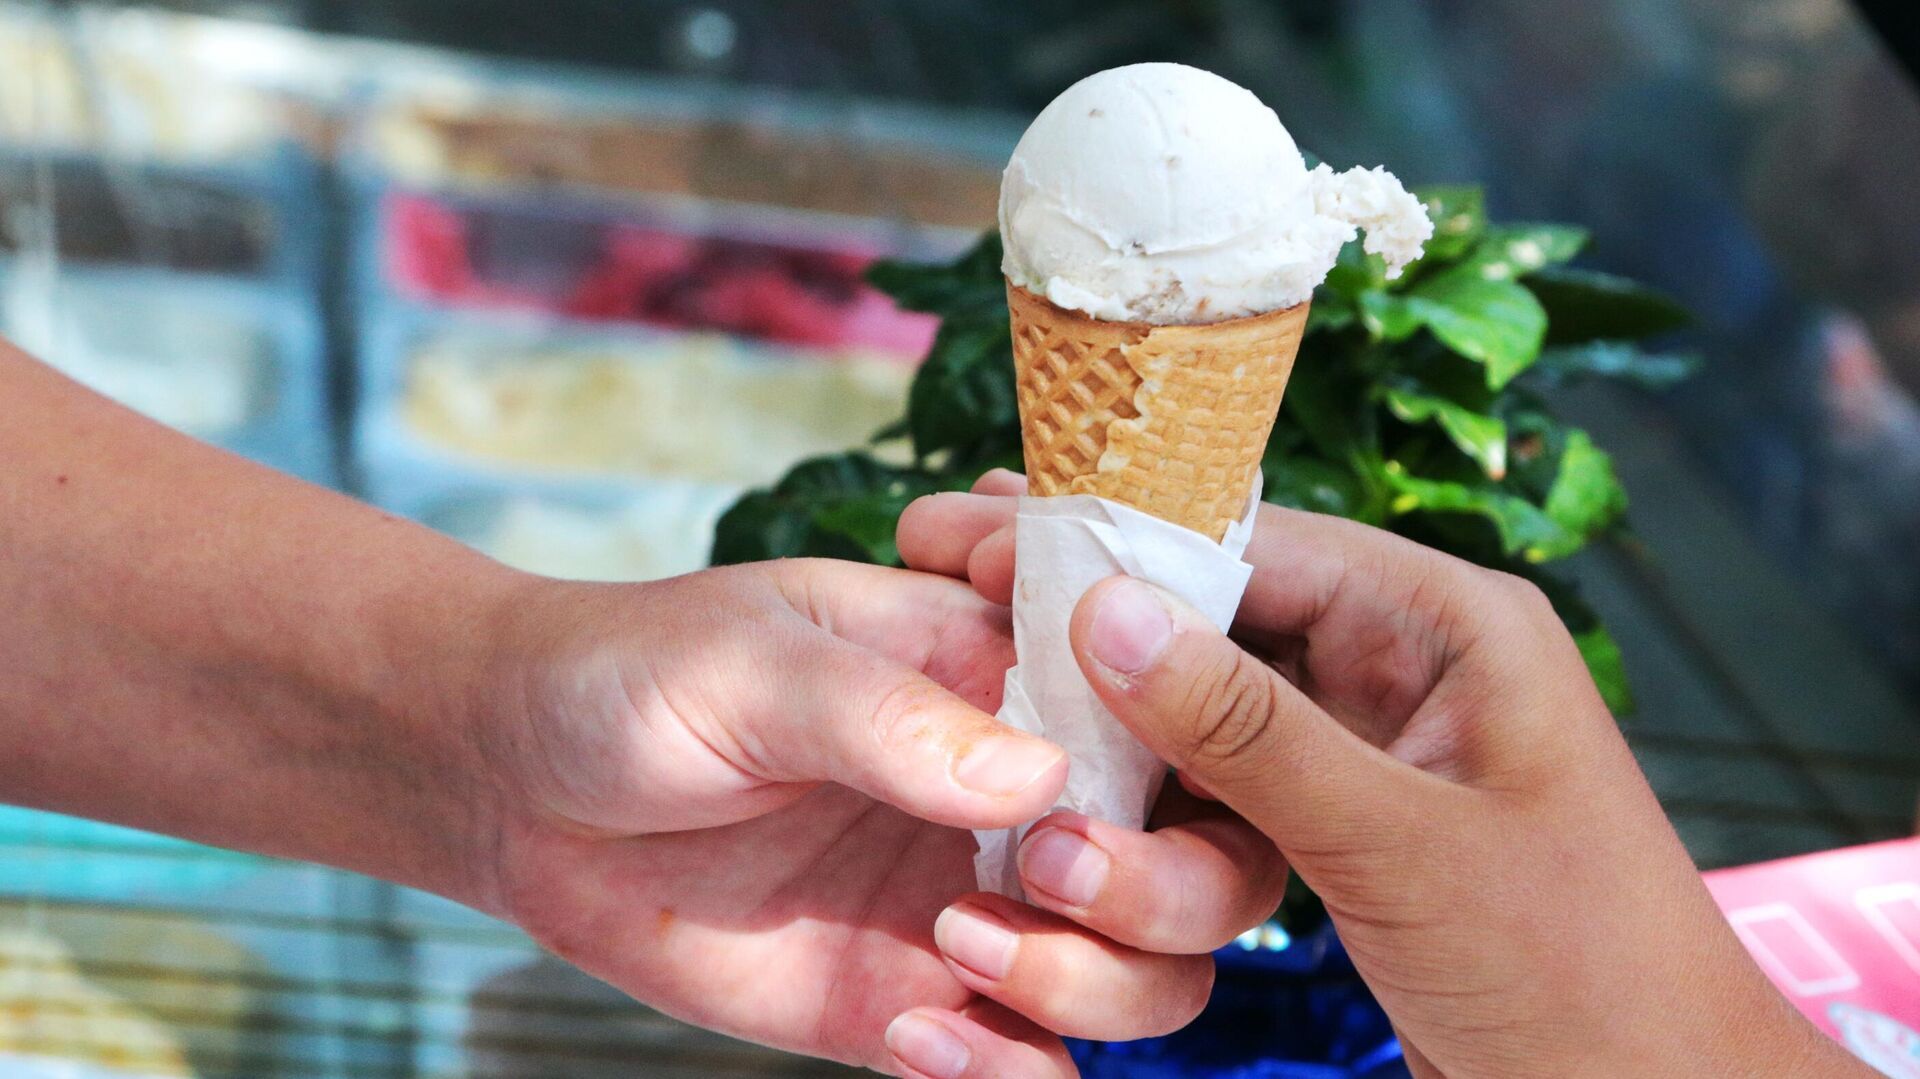 Çoxlu dondurma yeməyin acı nəticələri - Ürək dayana bilər